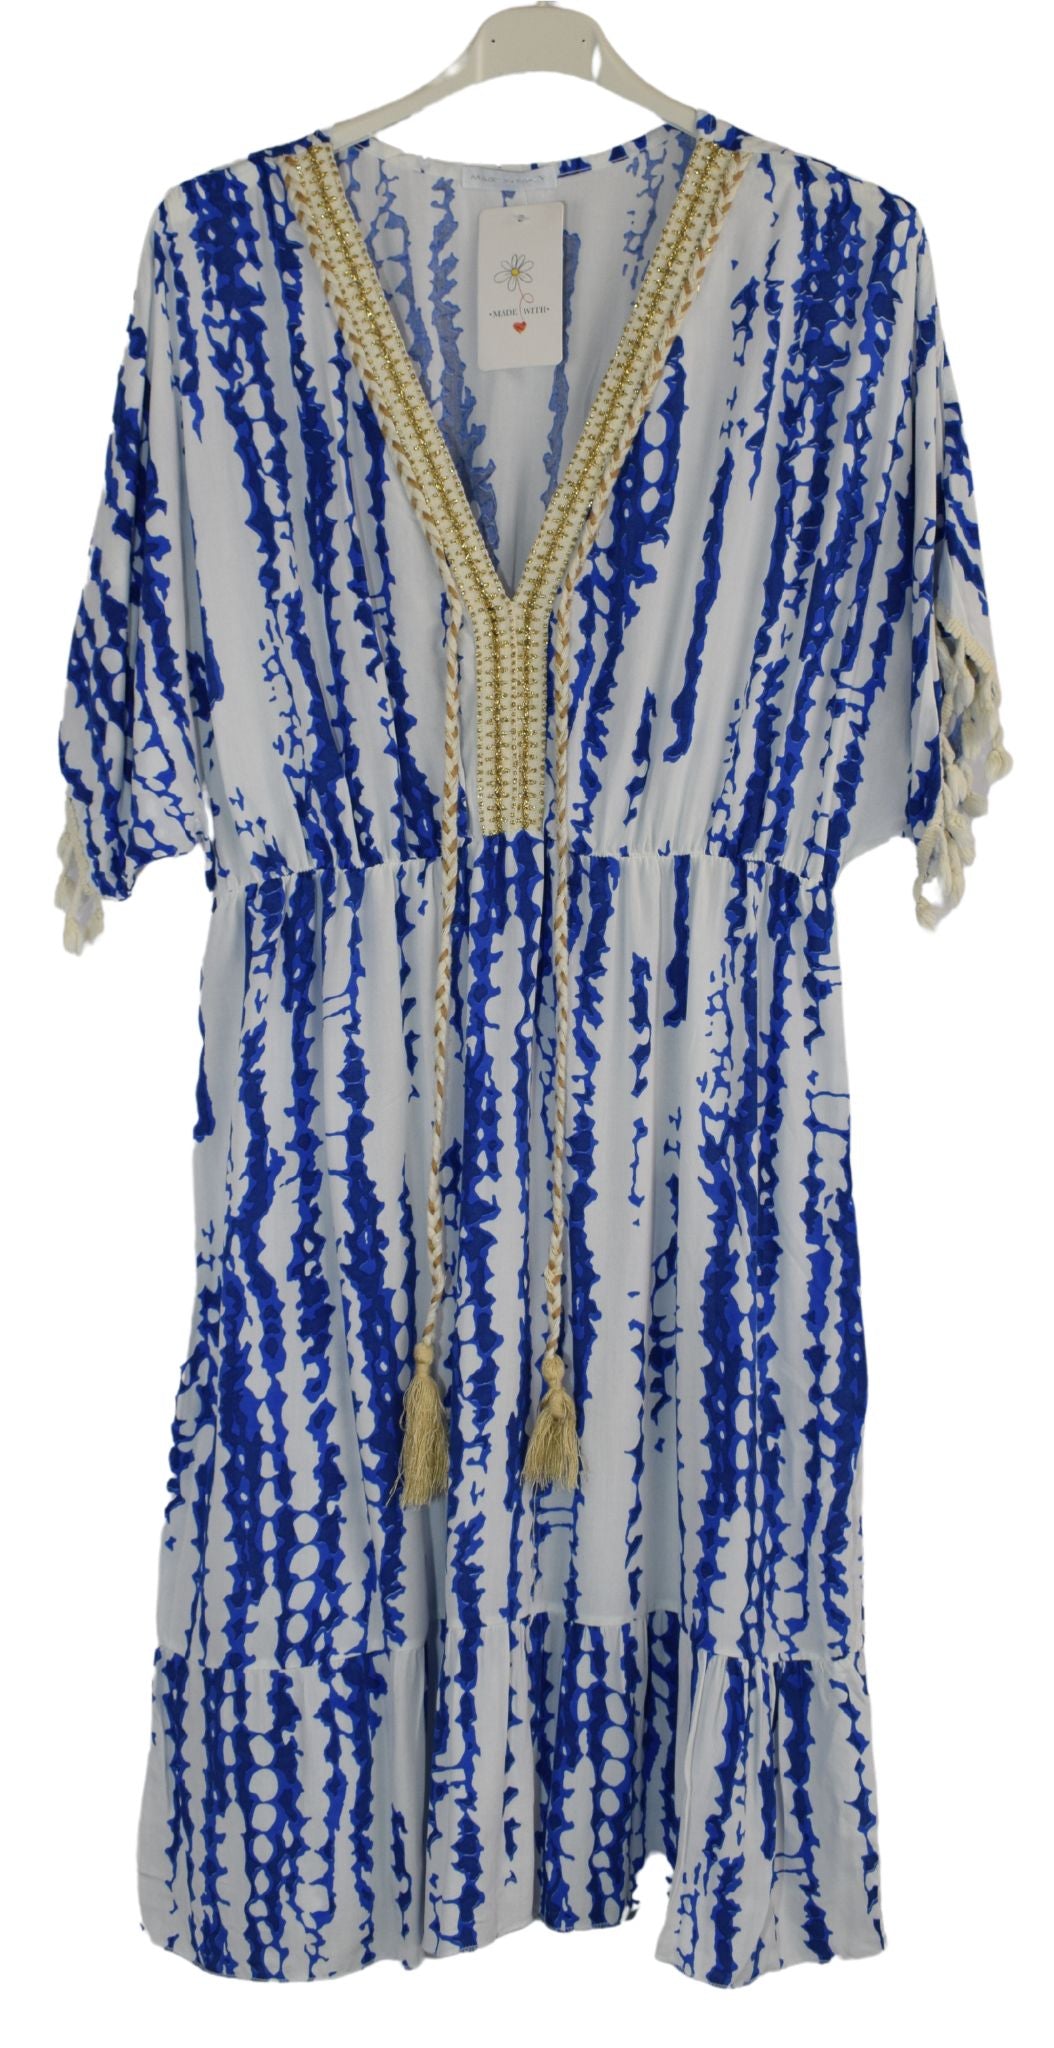 Tie Dye Short Kaftan Style Summer Dress Women's Italian Lagenlook Dress with Tassels